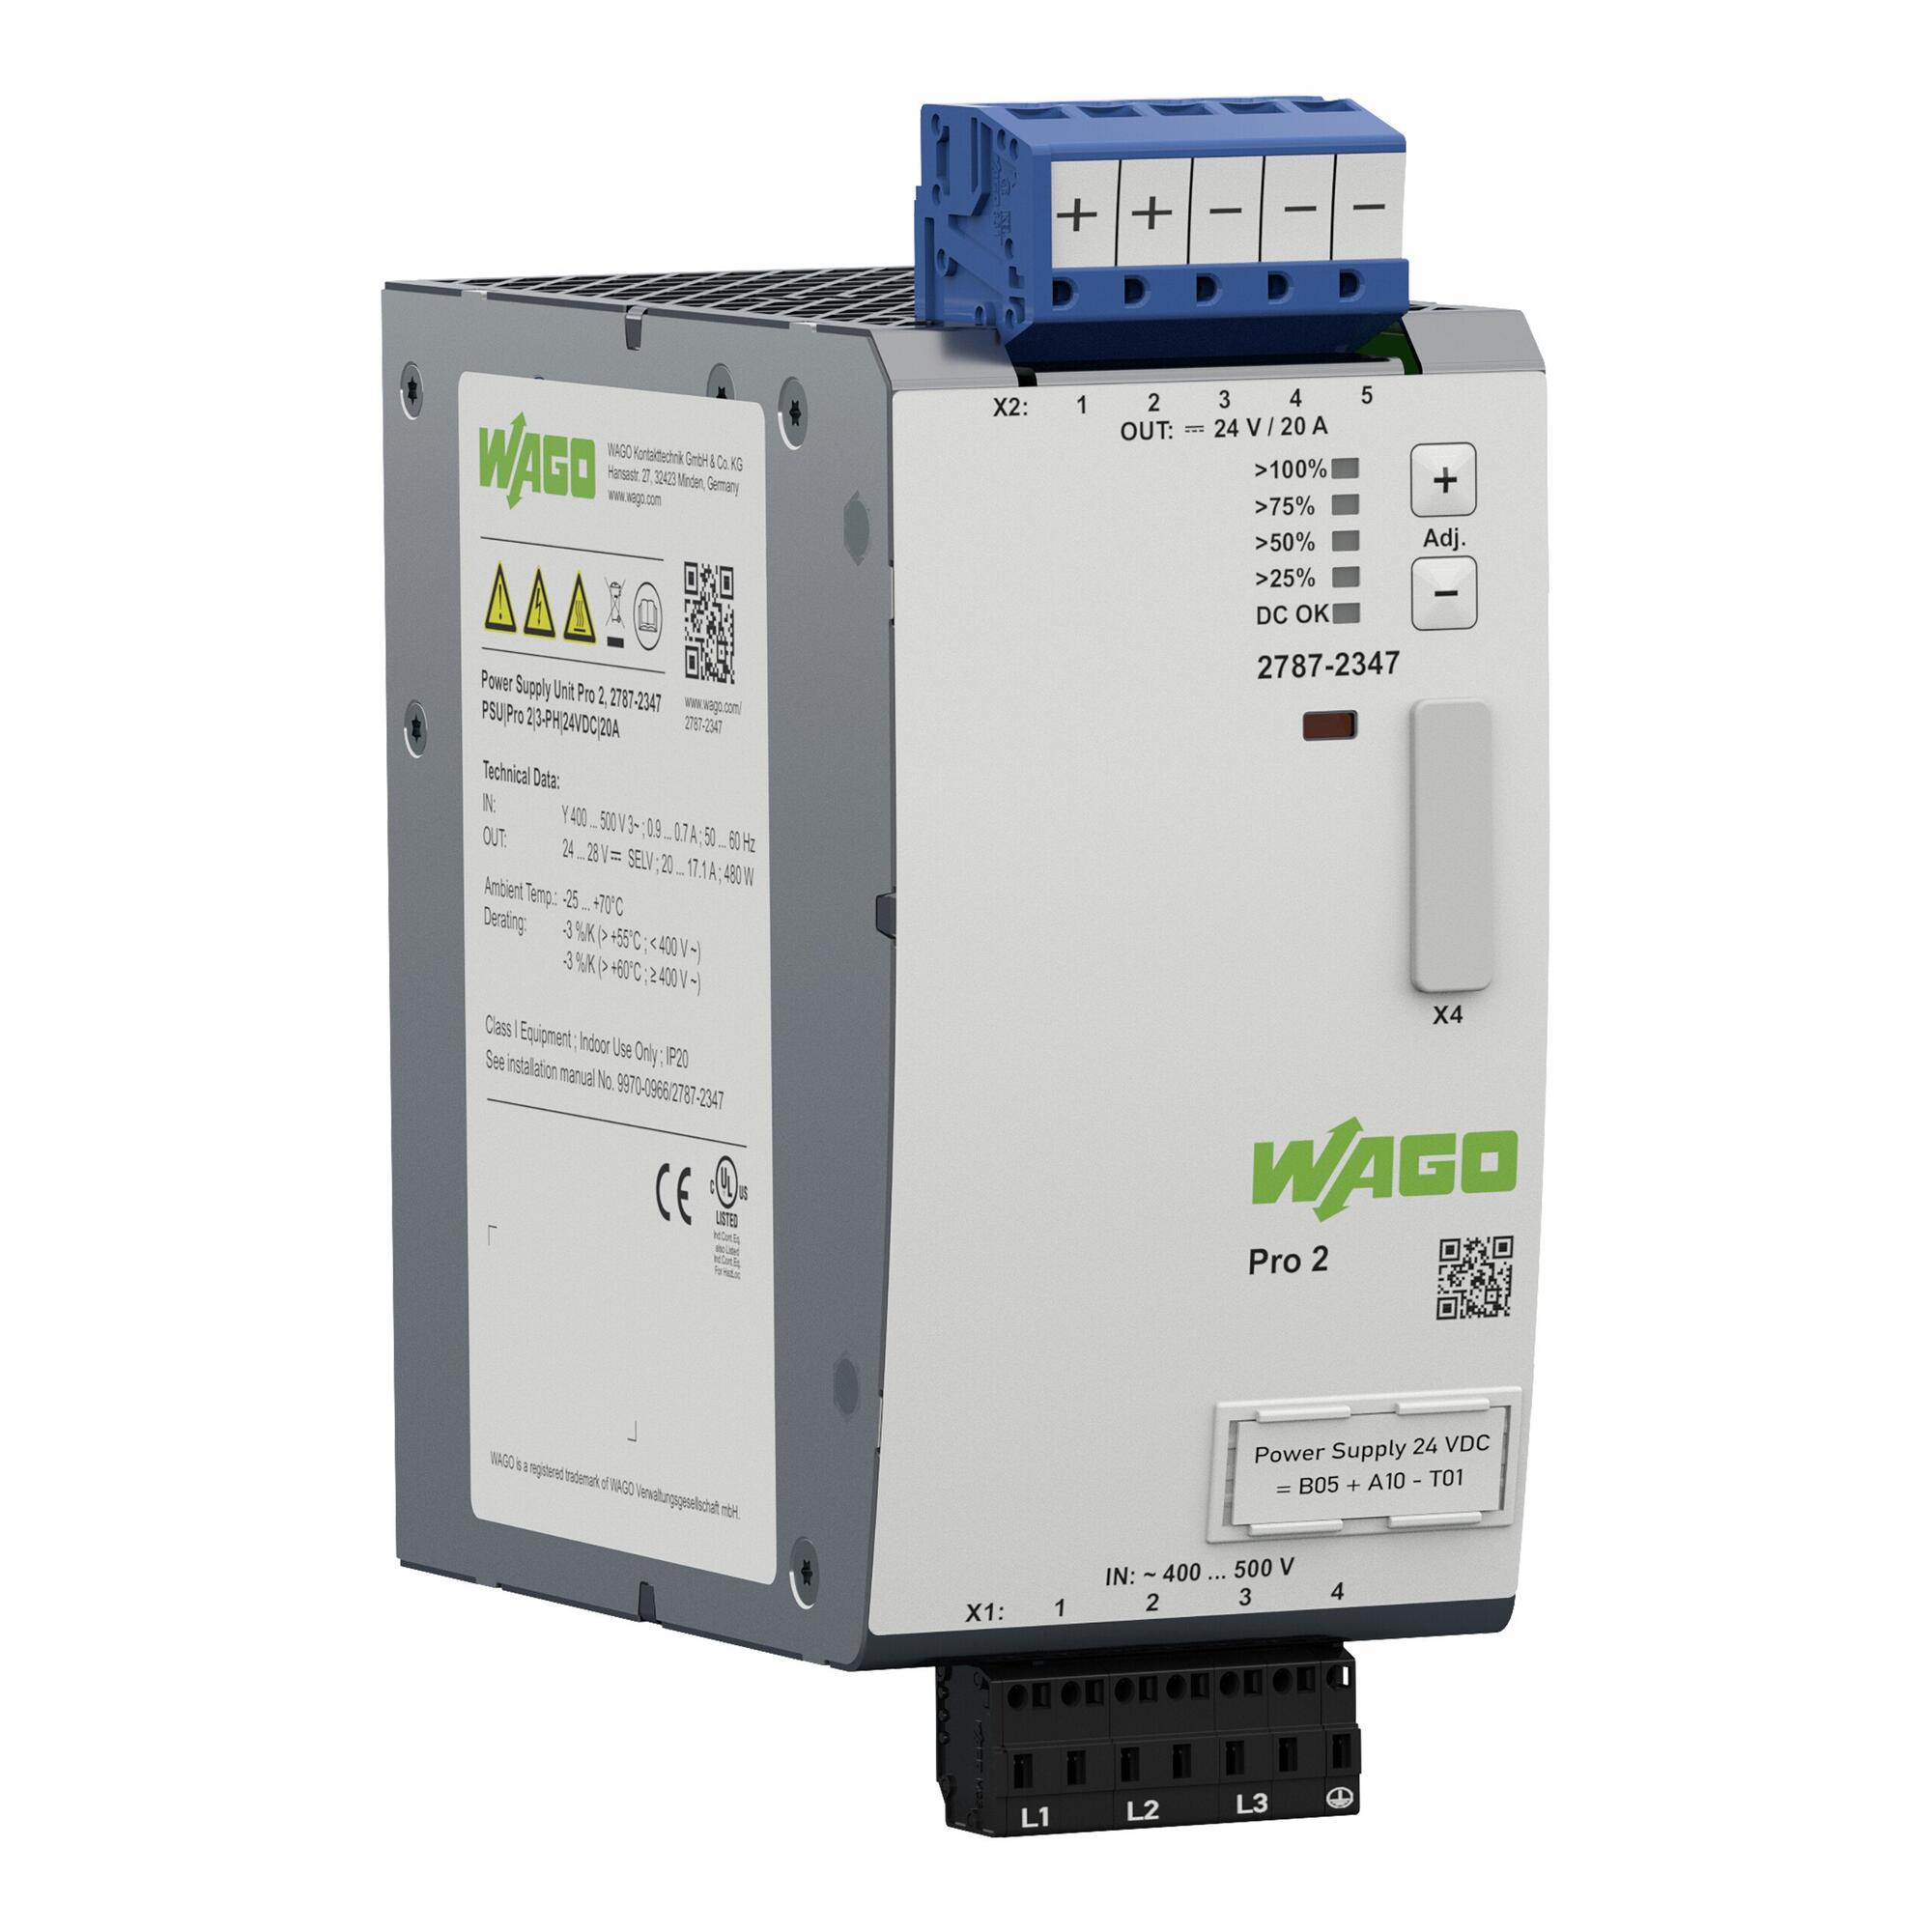 电源; Pro 2; 3相; 24 VDC输出电压; 20 A 输出电流; TopBoost + PowerBoost; 通信能力